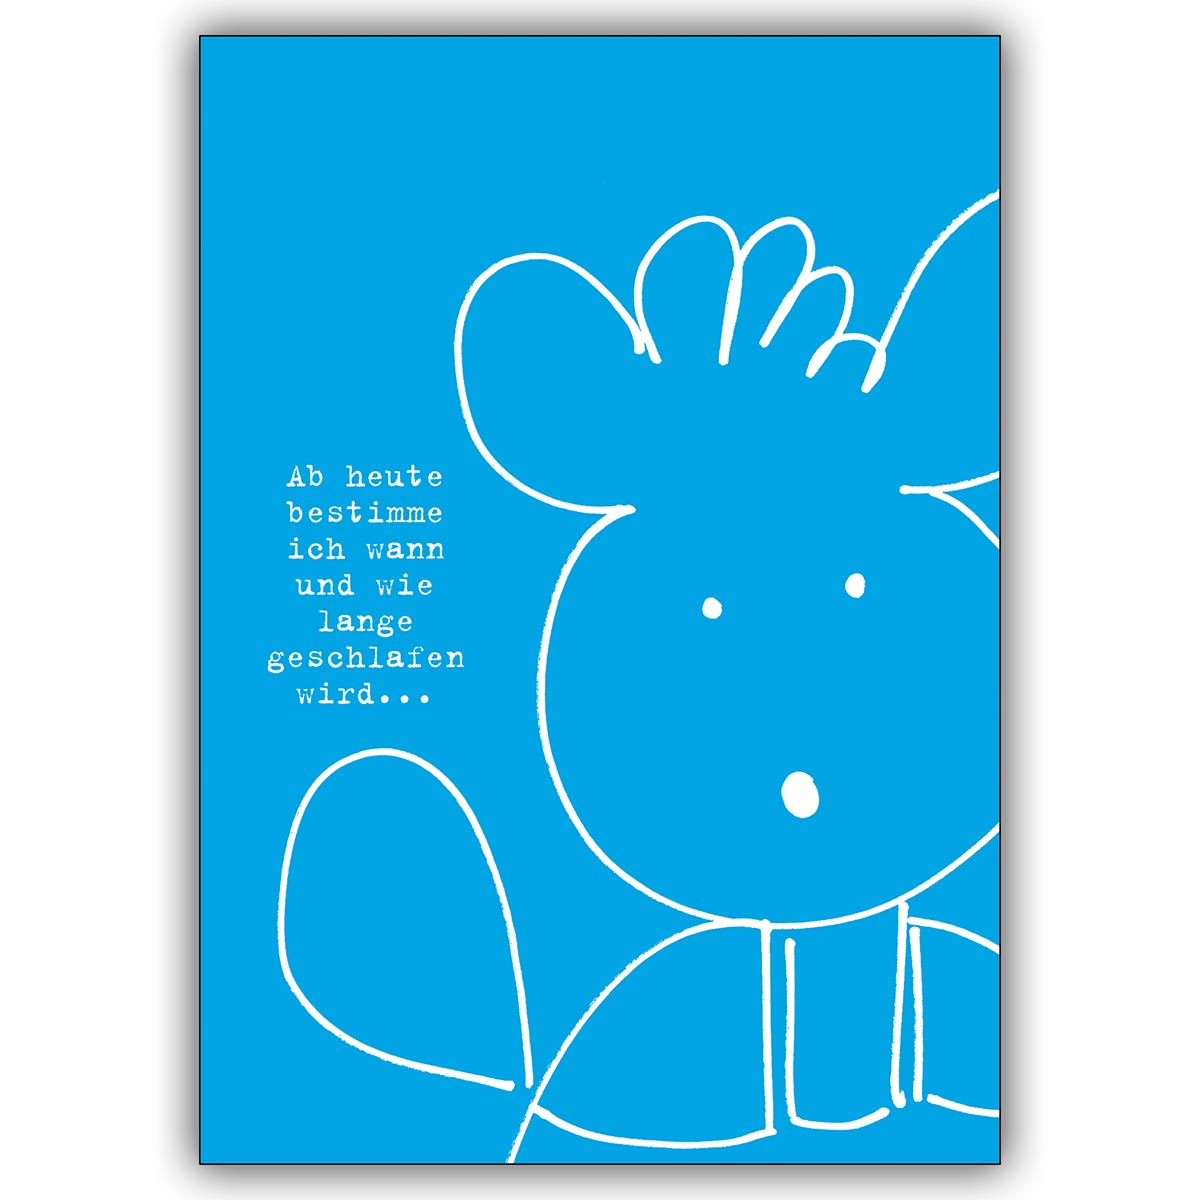 Fröhliche Babykarte zur Geburt eines kleinen Jungens mit Bärchen und Spruch